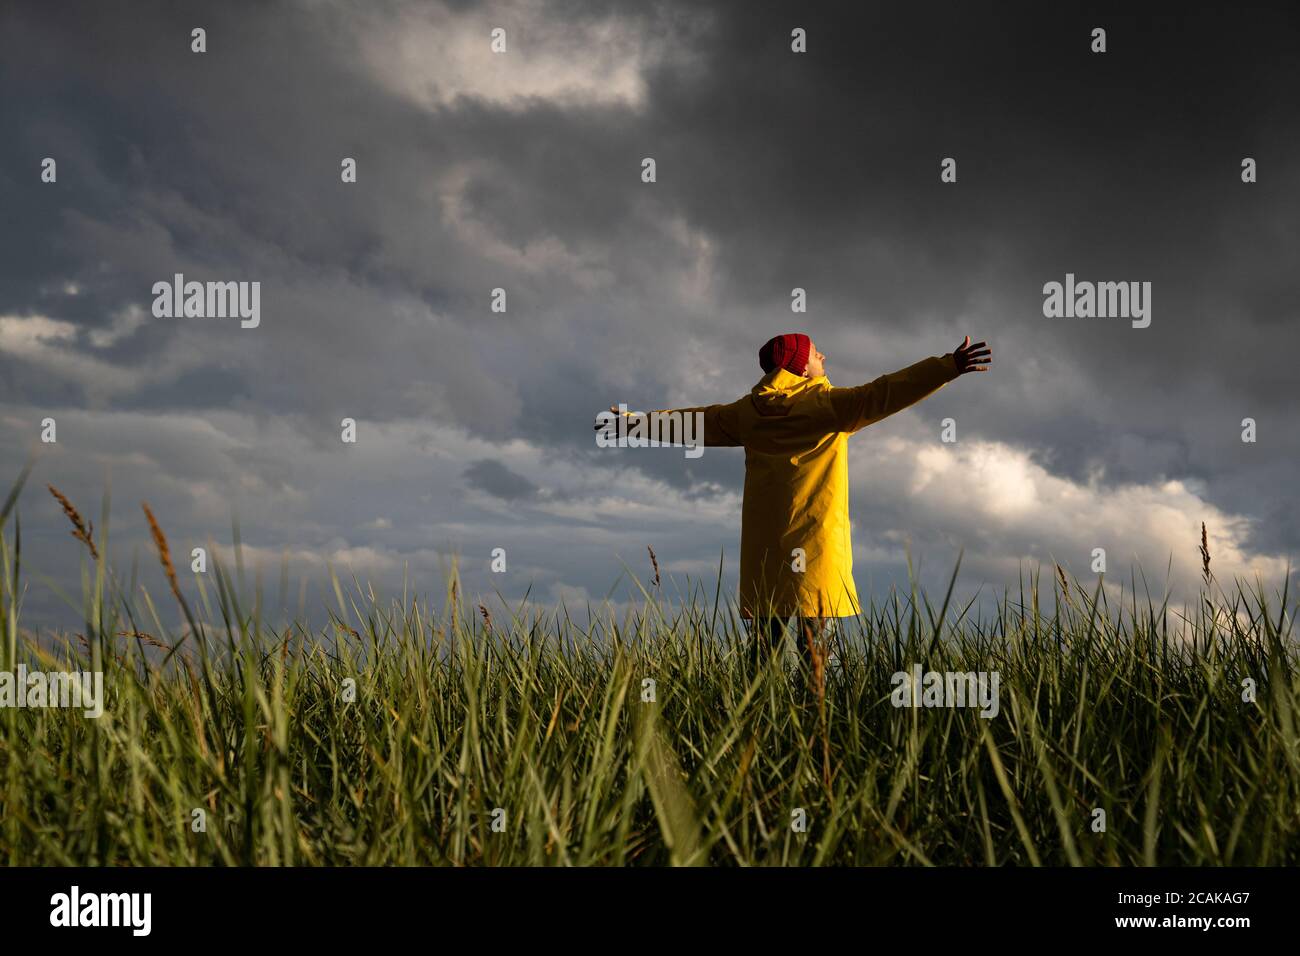 Homme en imperméable jaune et chapeau rouge avec les mains écartant largement ouvertes debout sur le terrain par temps pluvieux, regarde le ciel nuageux dramatique. Saison d'automne Banque D'Images